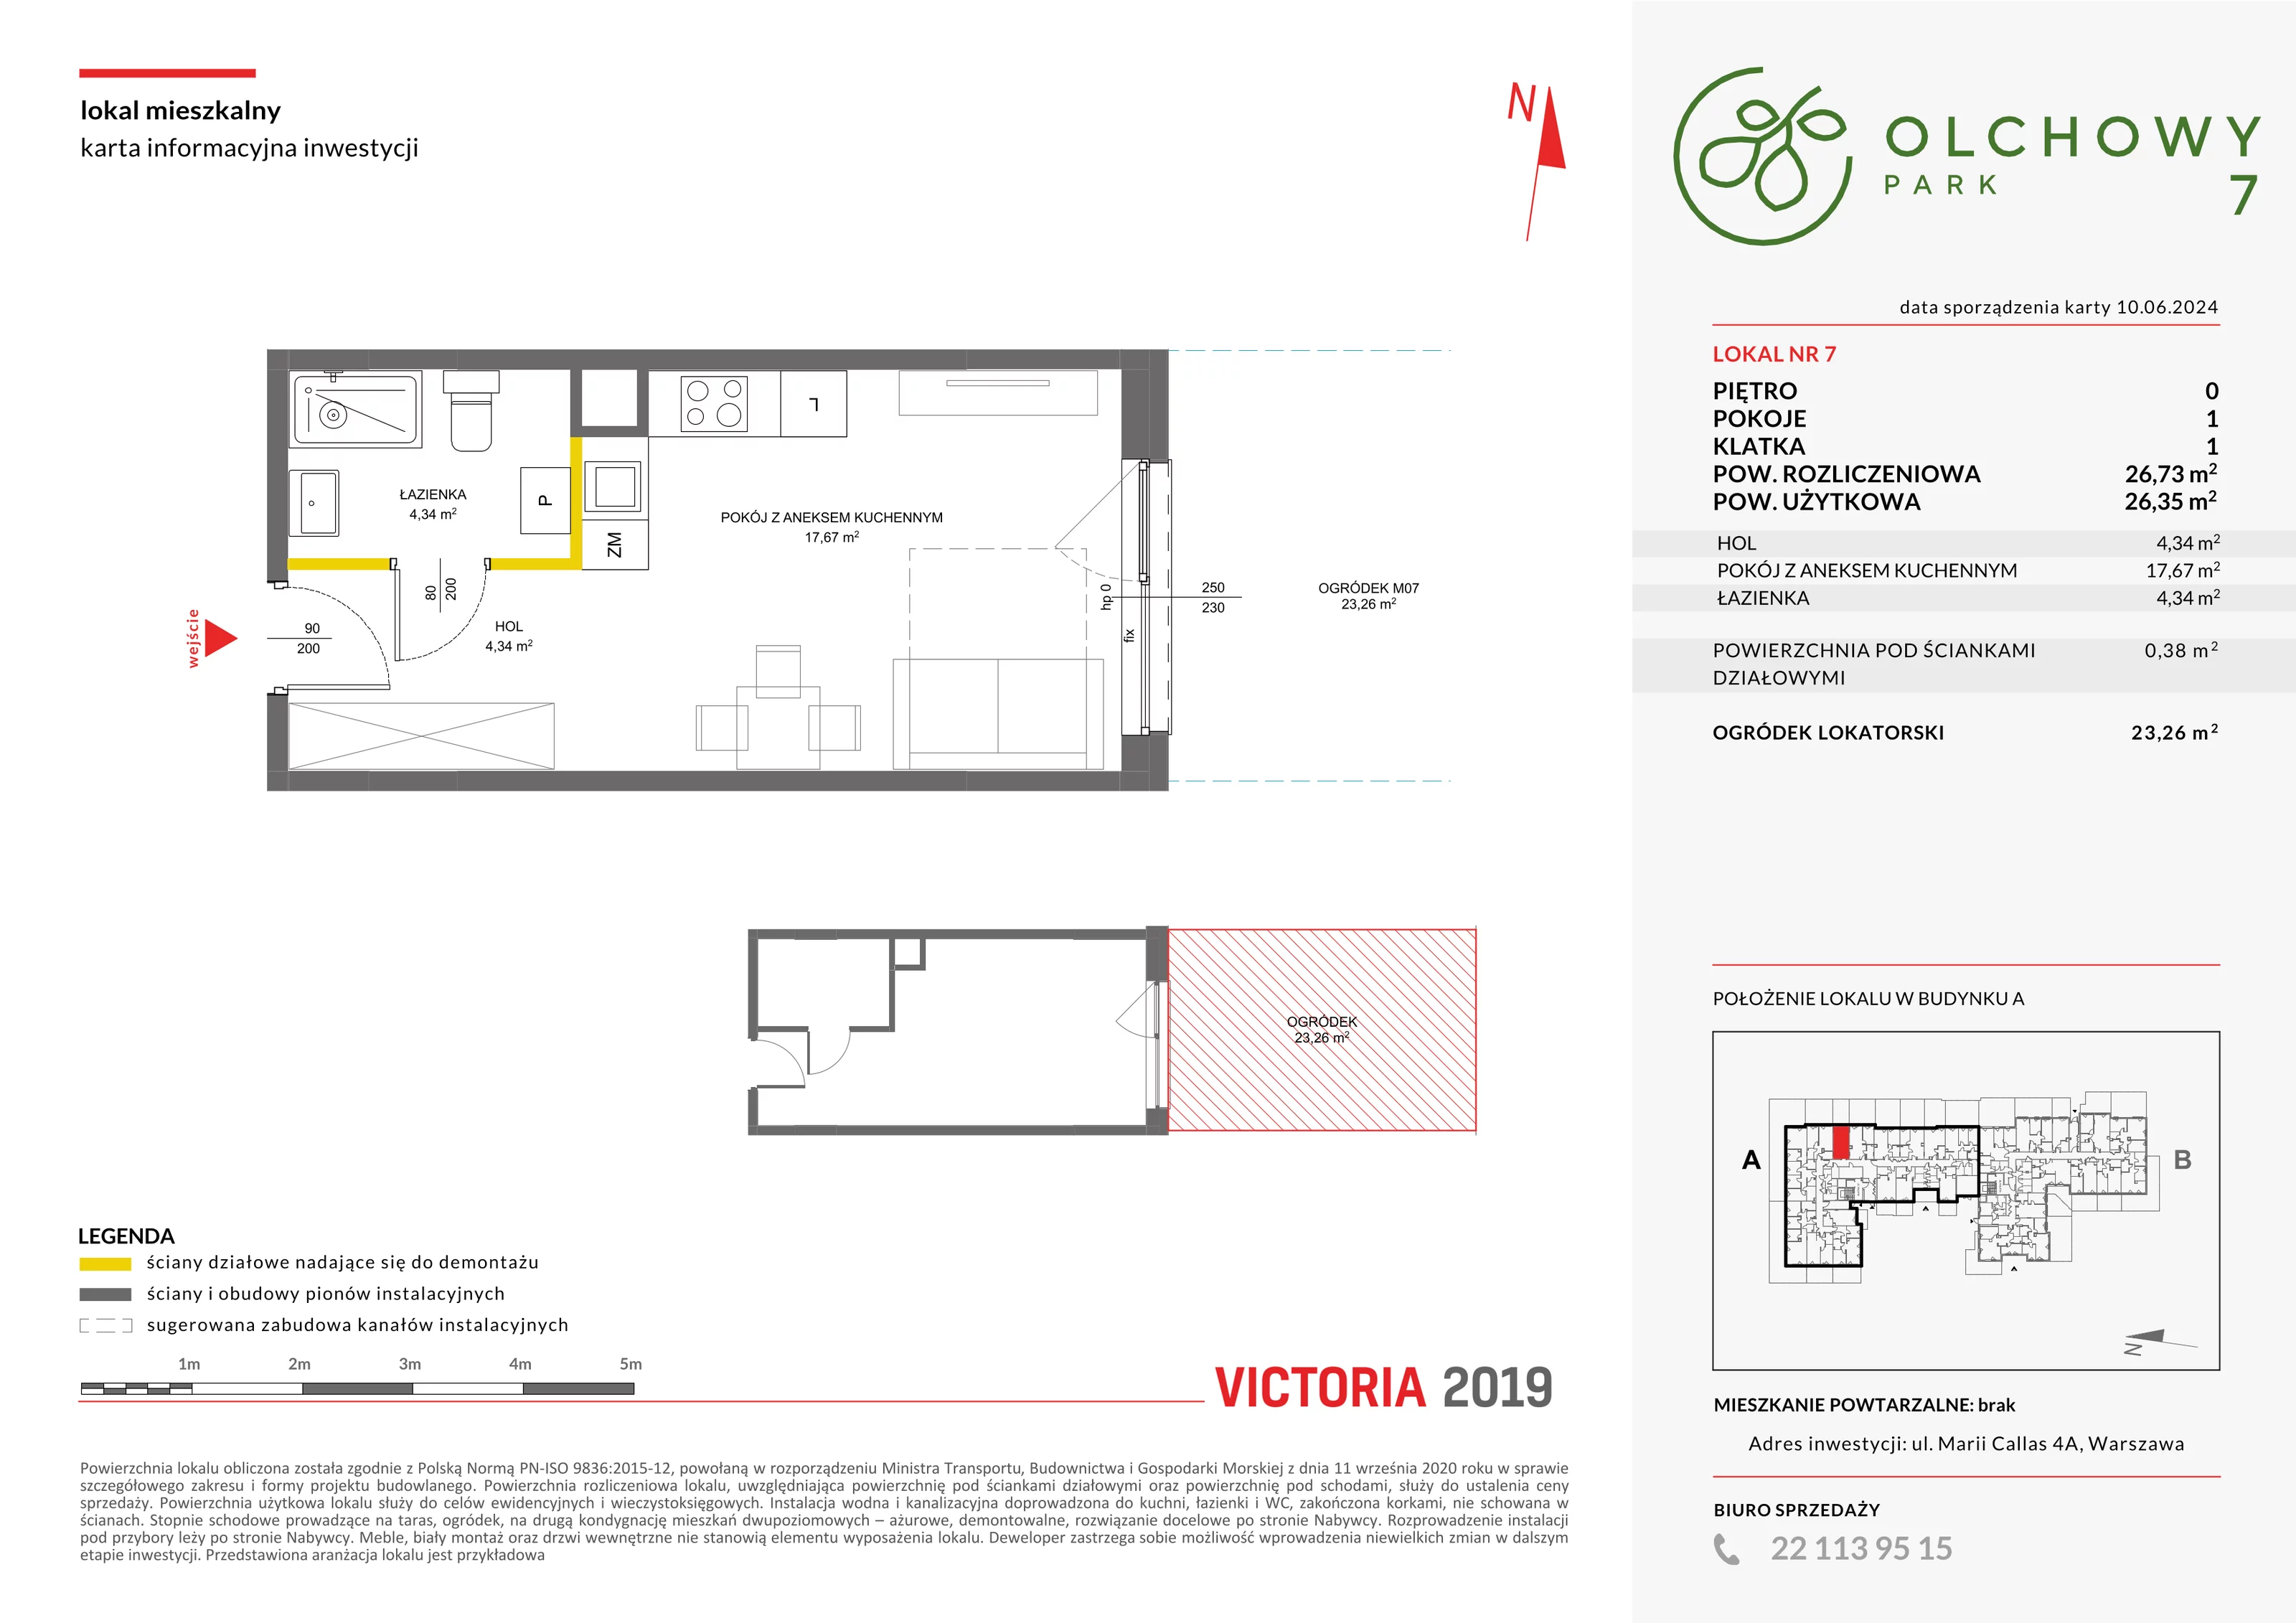 Mieszkanie 26,73 m², parter, oferta nr VII/7, Olchowy Park 7, Warszawa, Białołęka, Kobiałka, ul. Marii Callas 4A